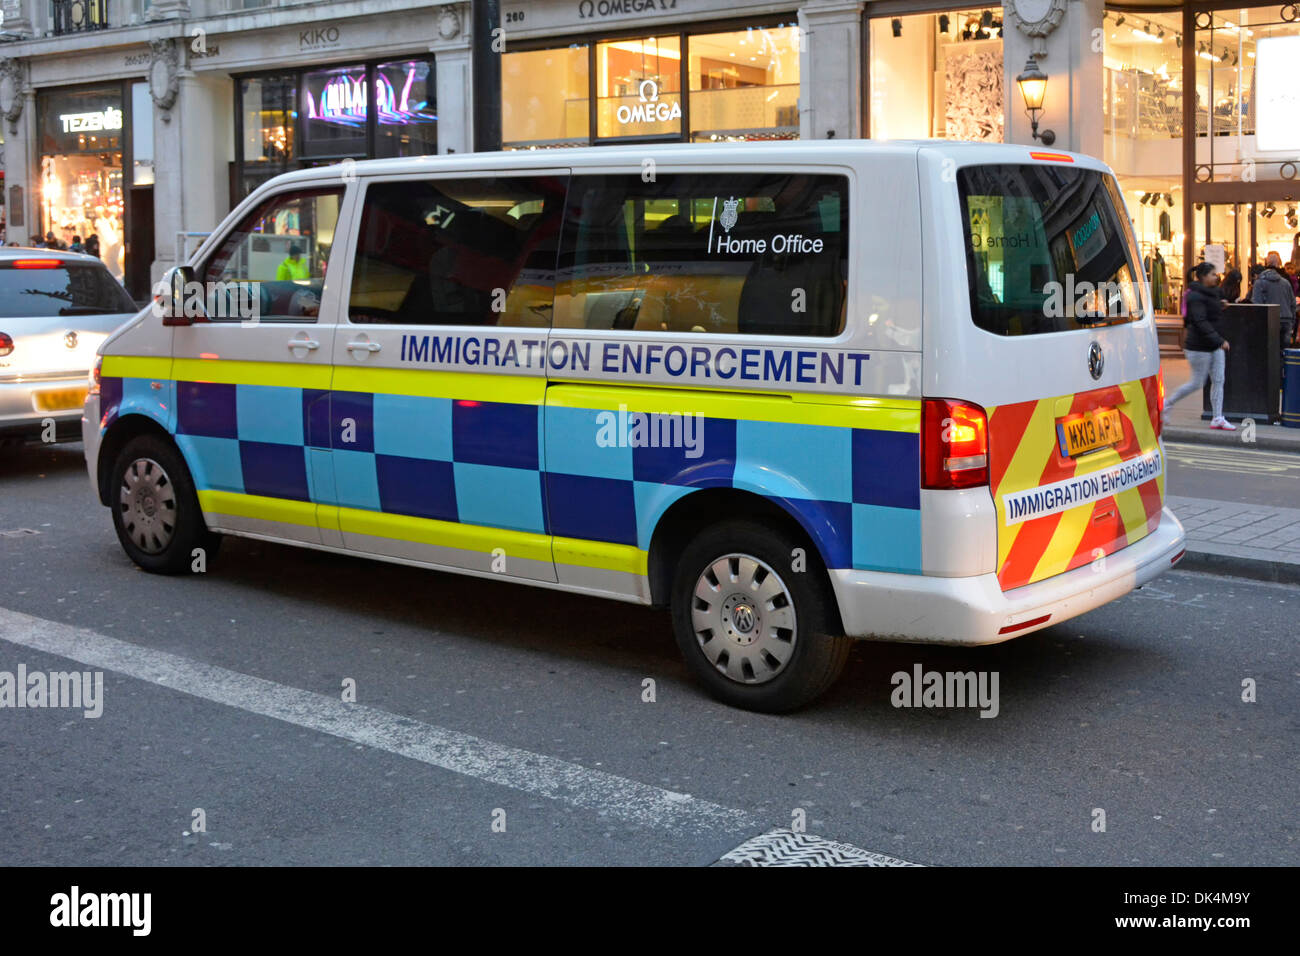 Straßenszene Britische Regierung Innenministerium Immigration Enforcement People Carrier Van in Regent Street West End von London England Großbritannien Stockfoto